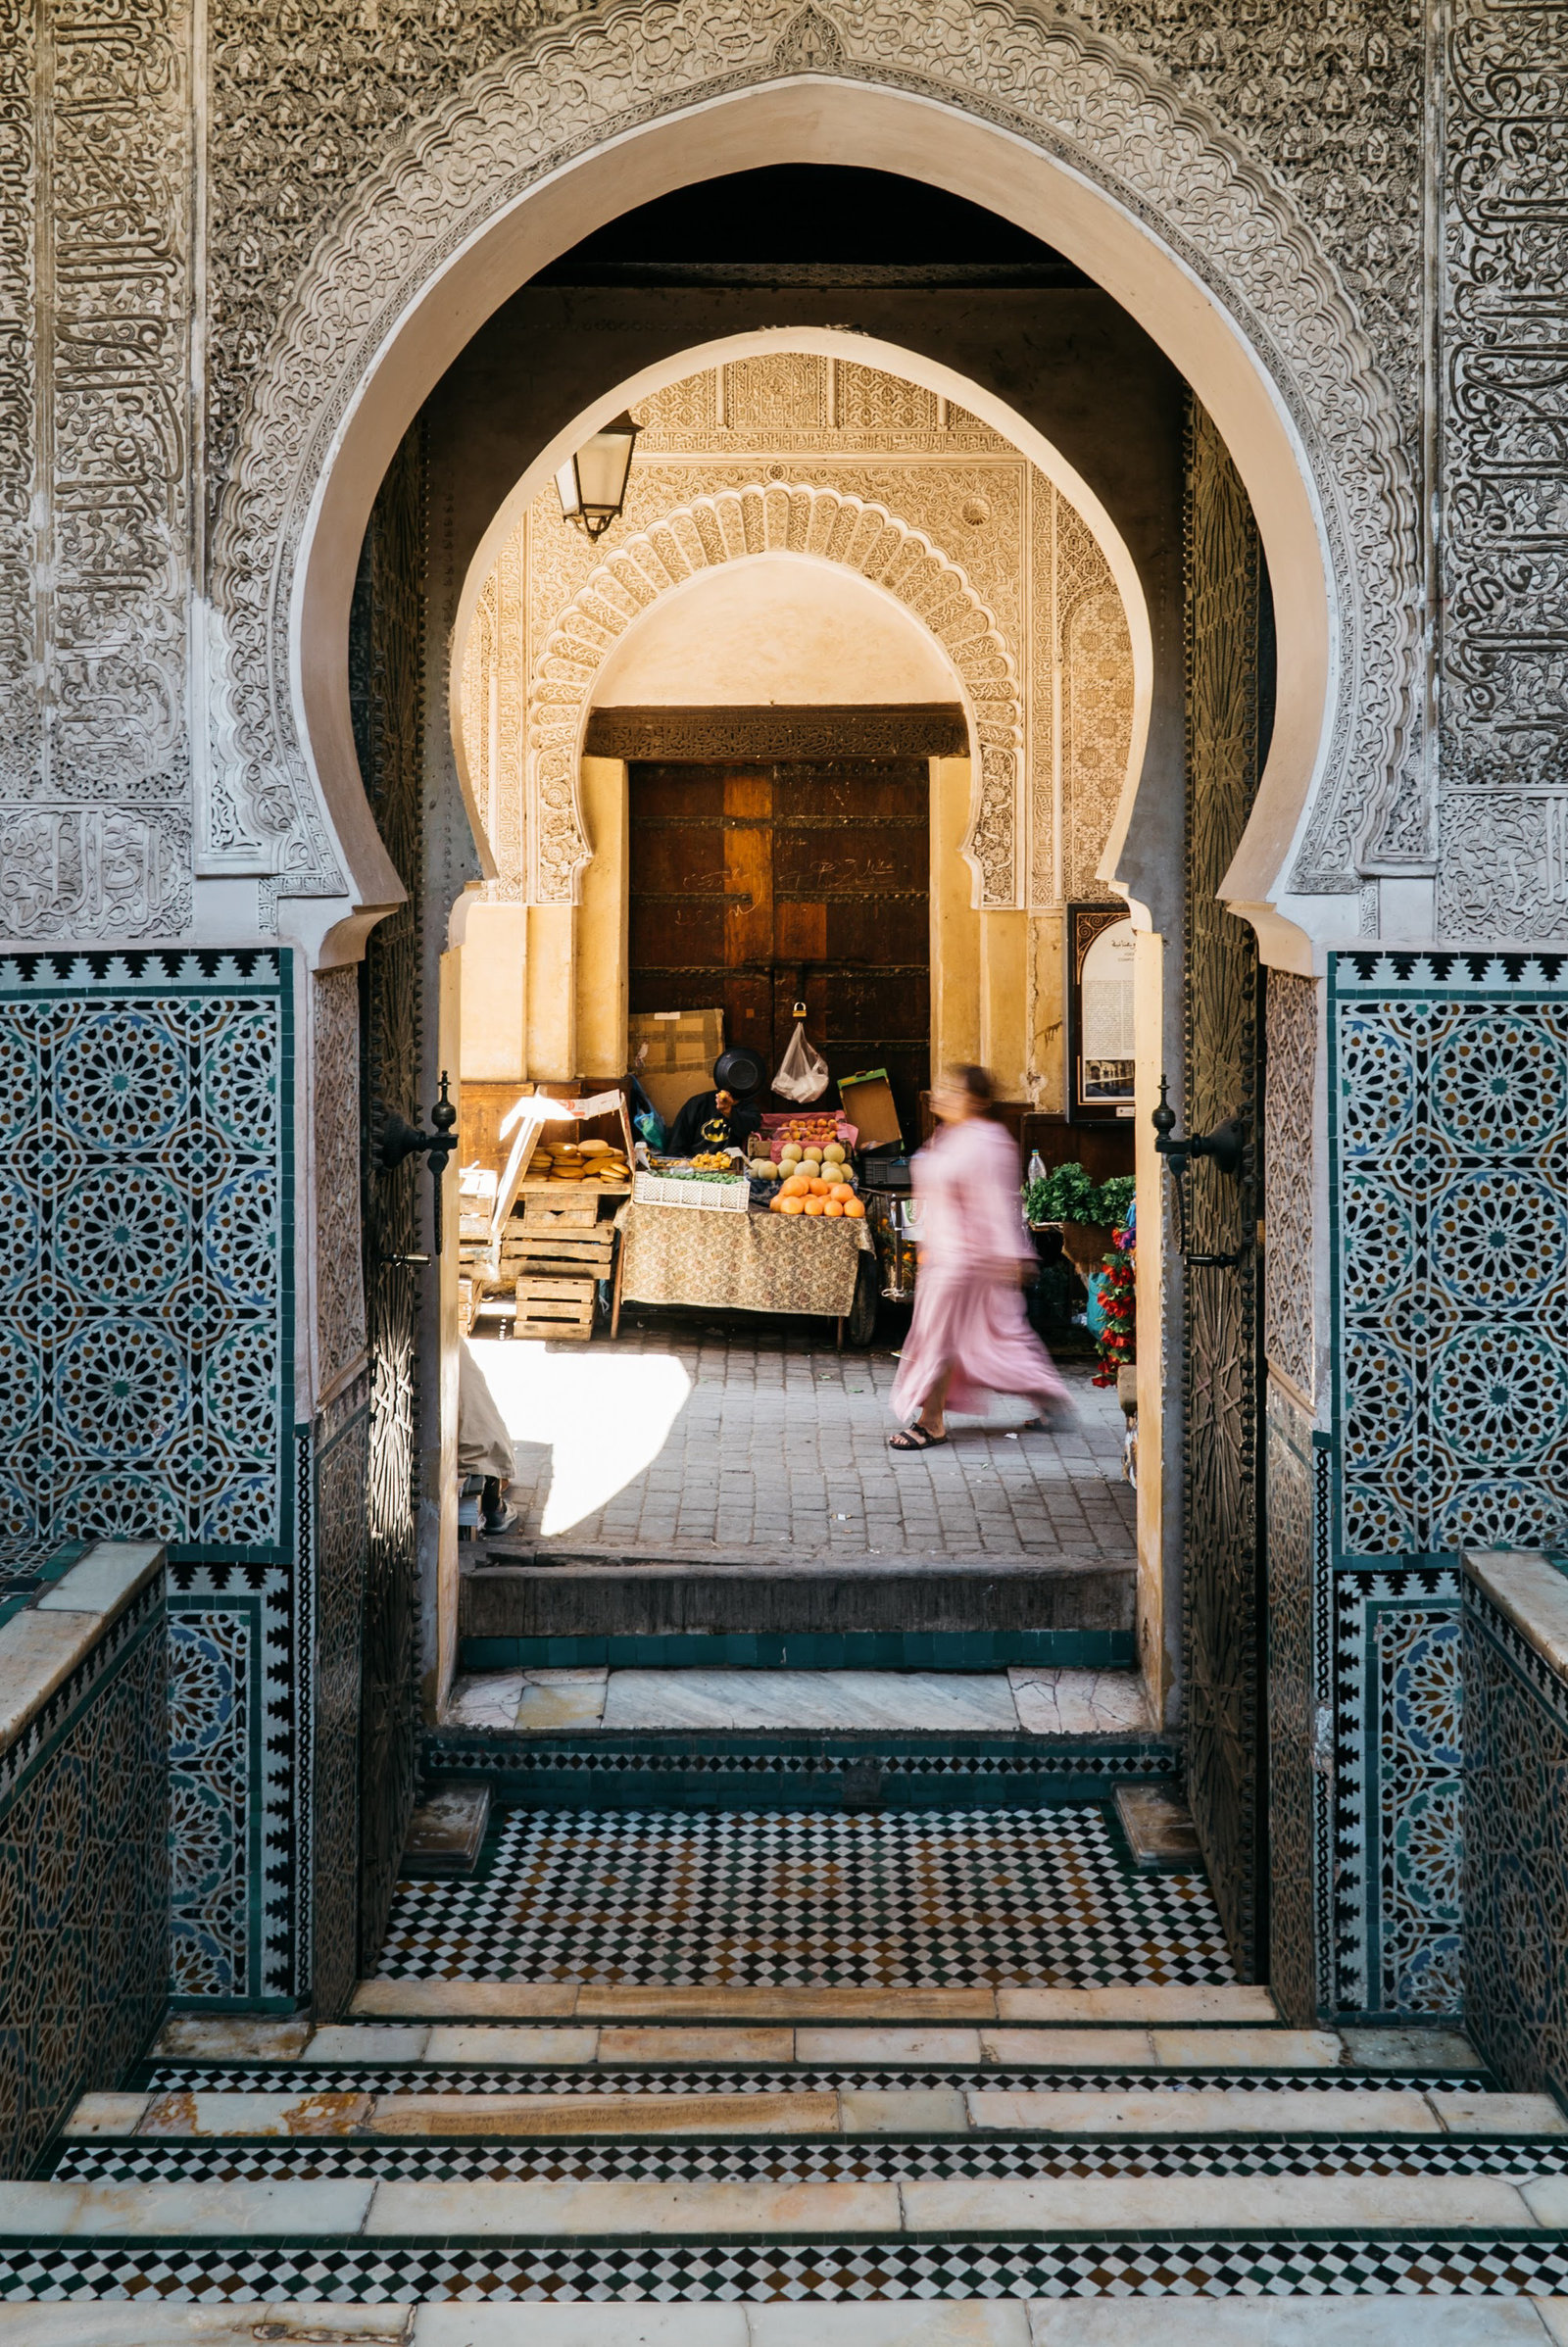 Sasha_Reiko_Photography_Travel_Morocco-179